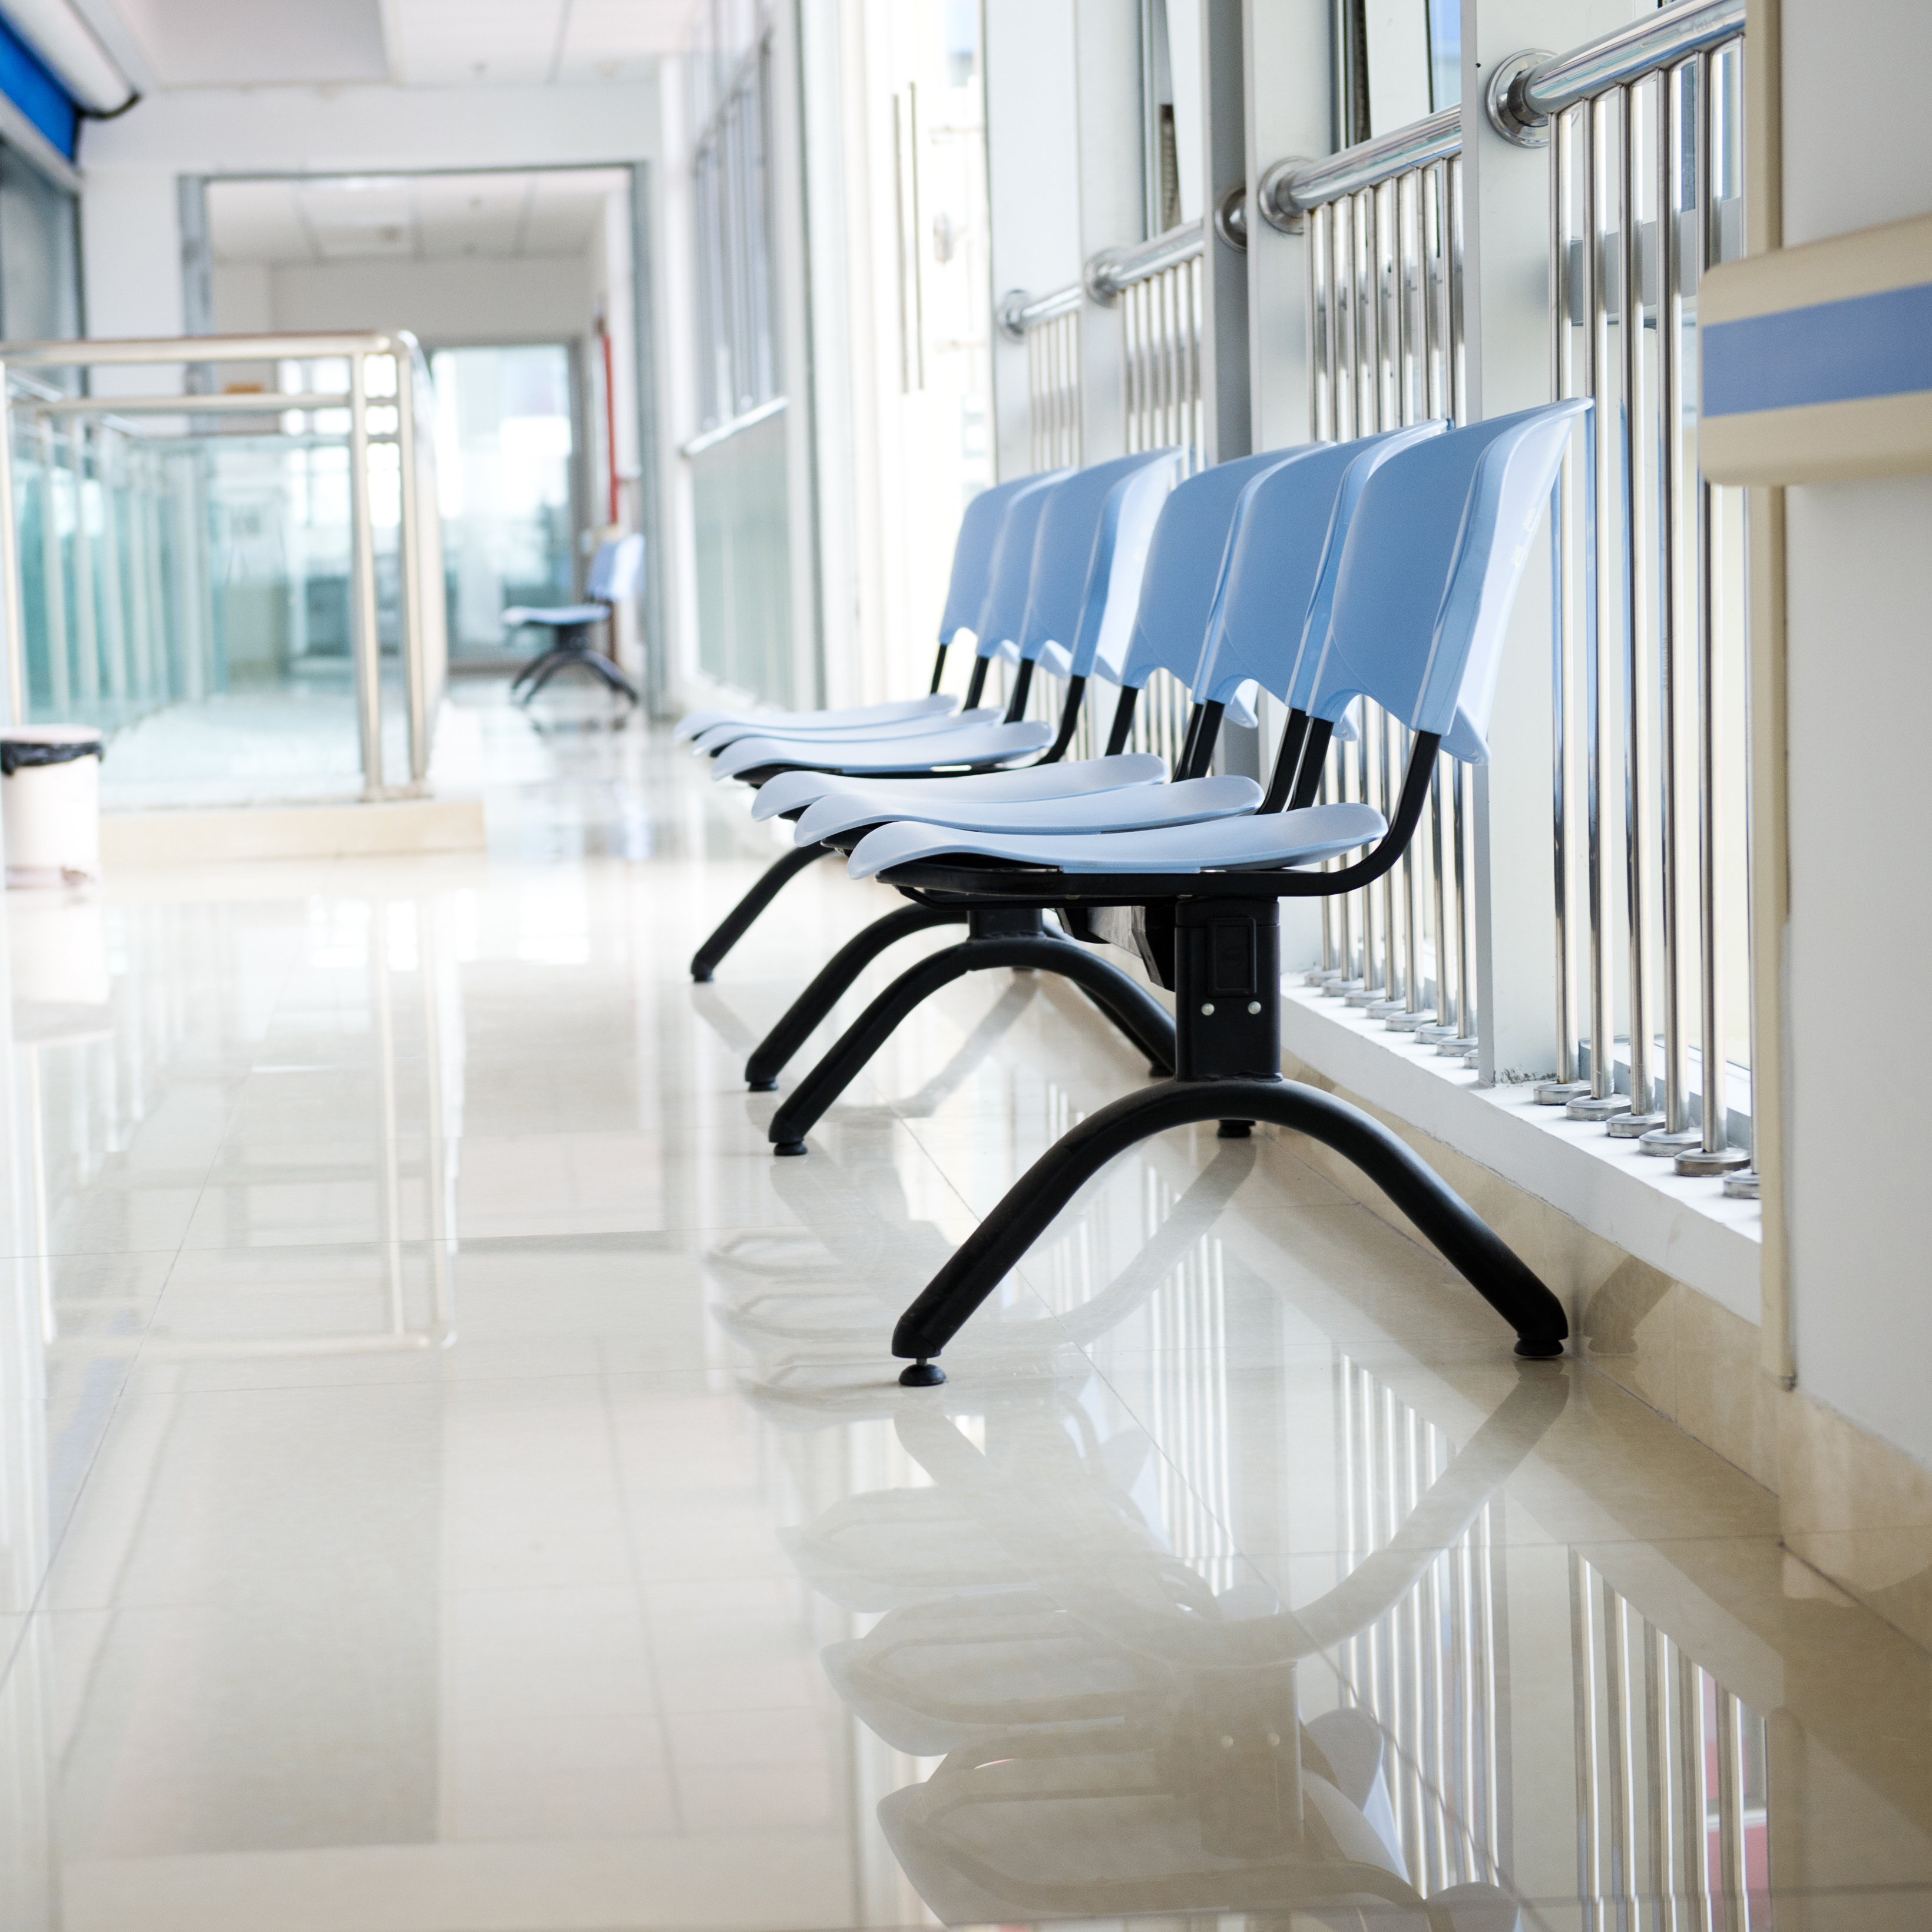 El pasillo de un hospital | Fuente: Shutterstock